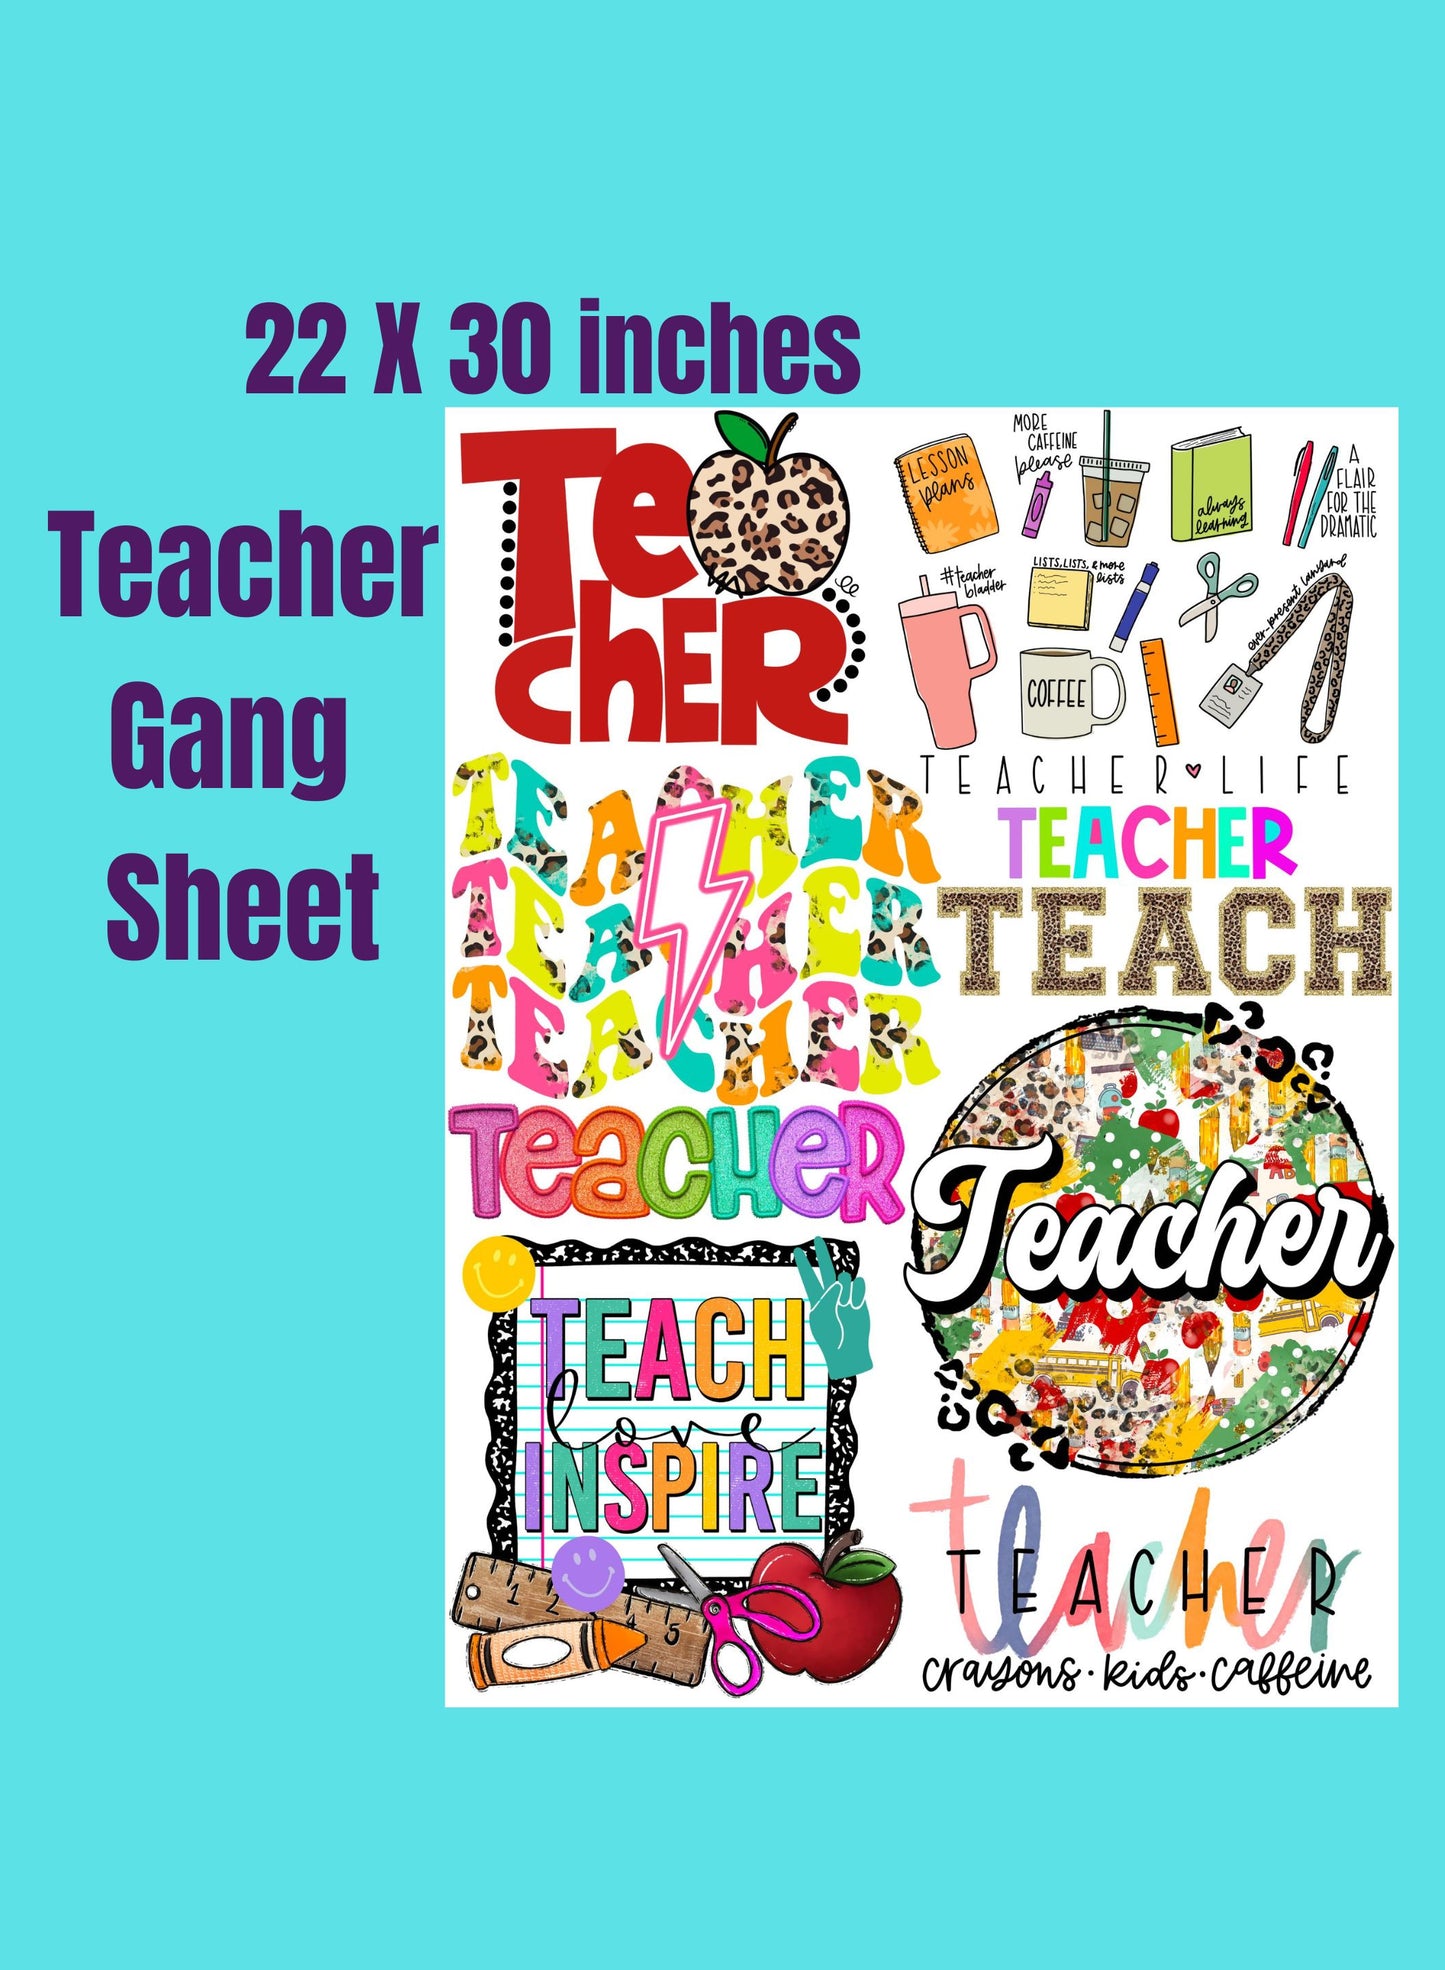 Premade Gang Sheet Teacher